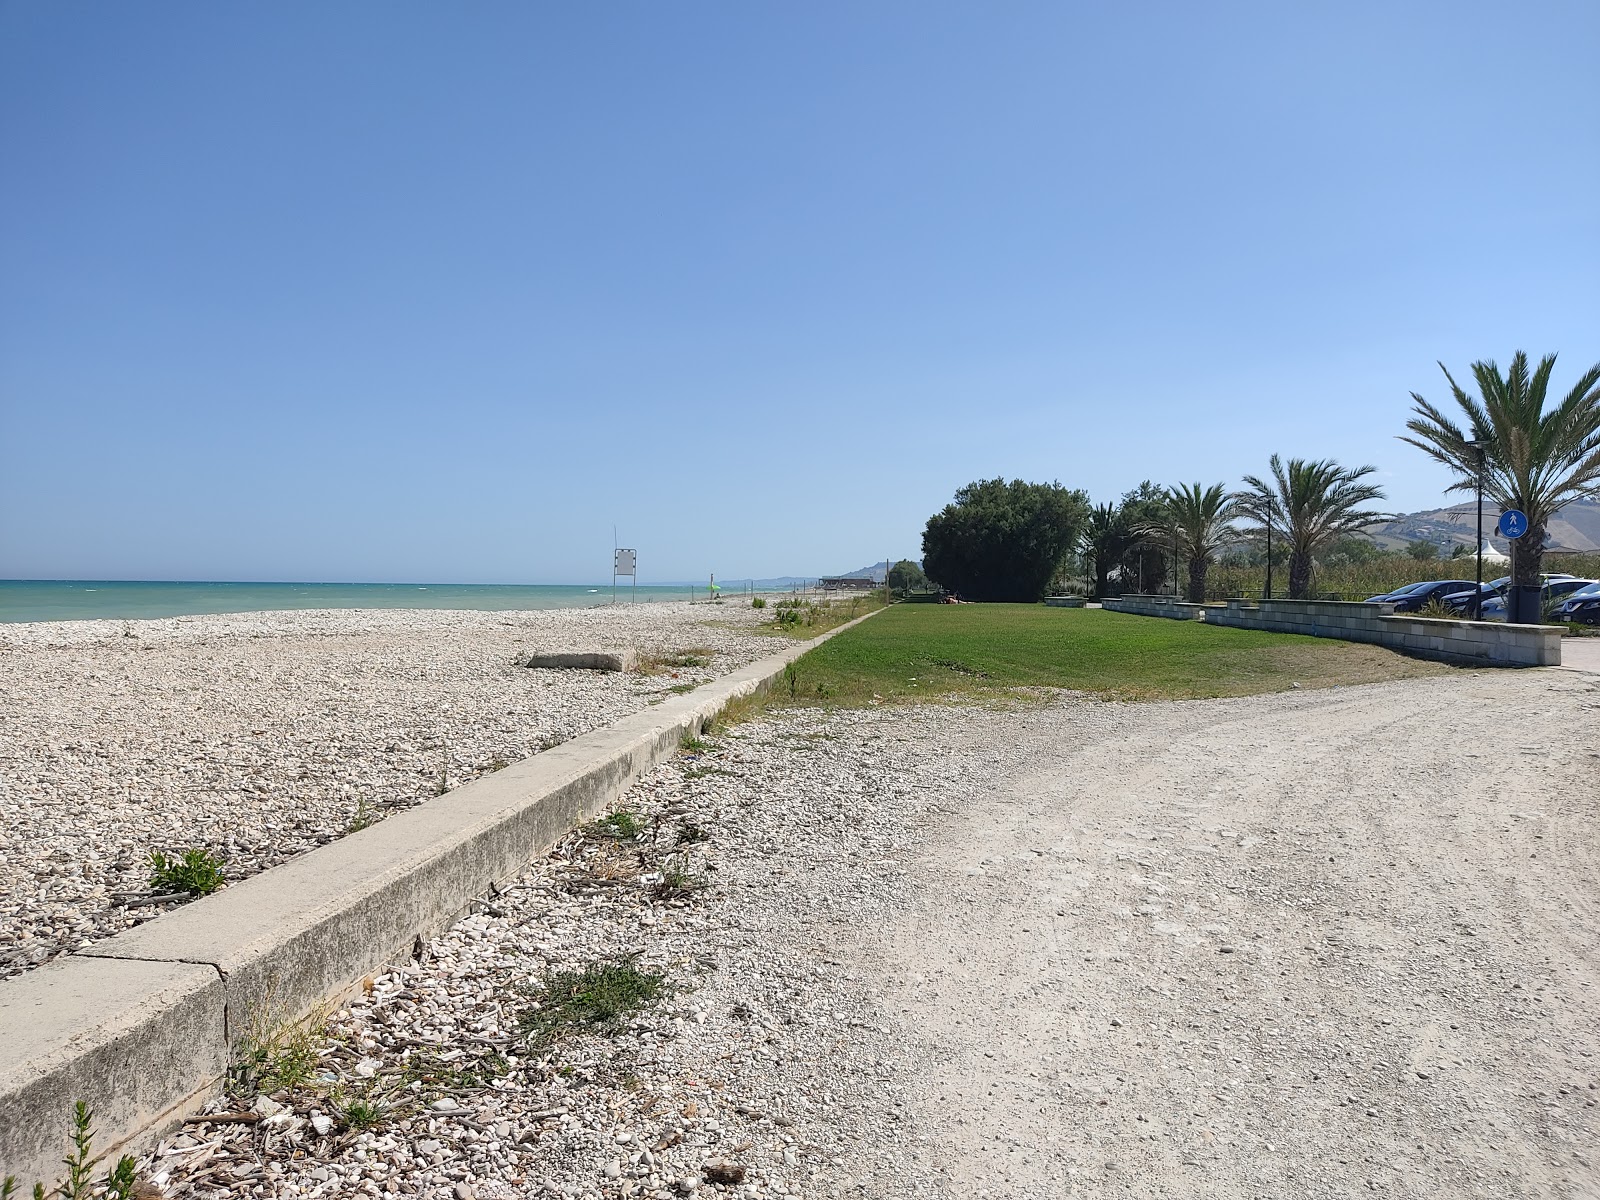 Foto av Spiaggia di Scerne med lång rak strand